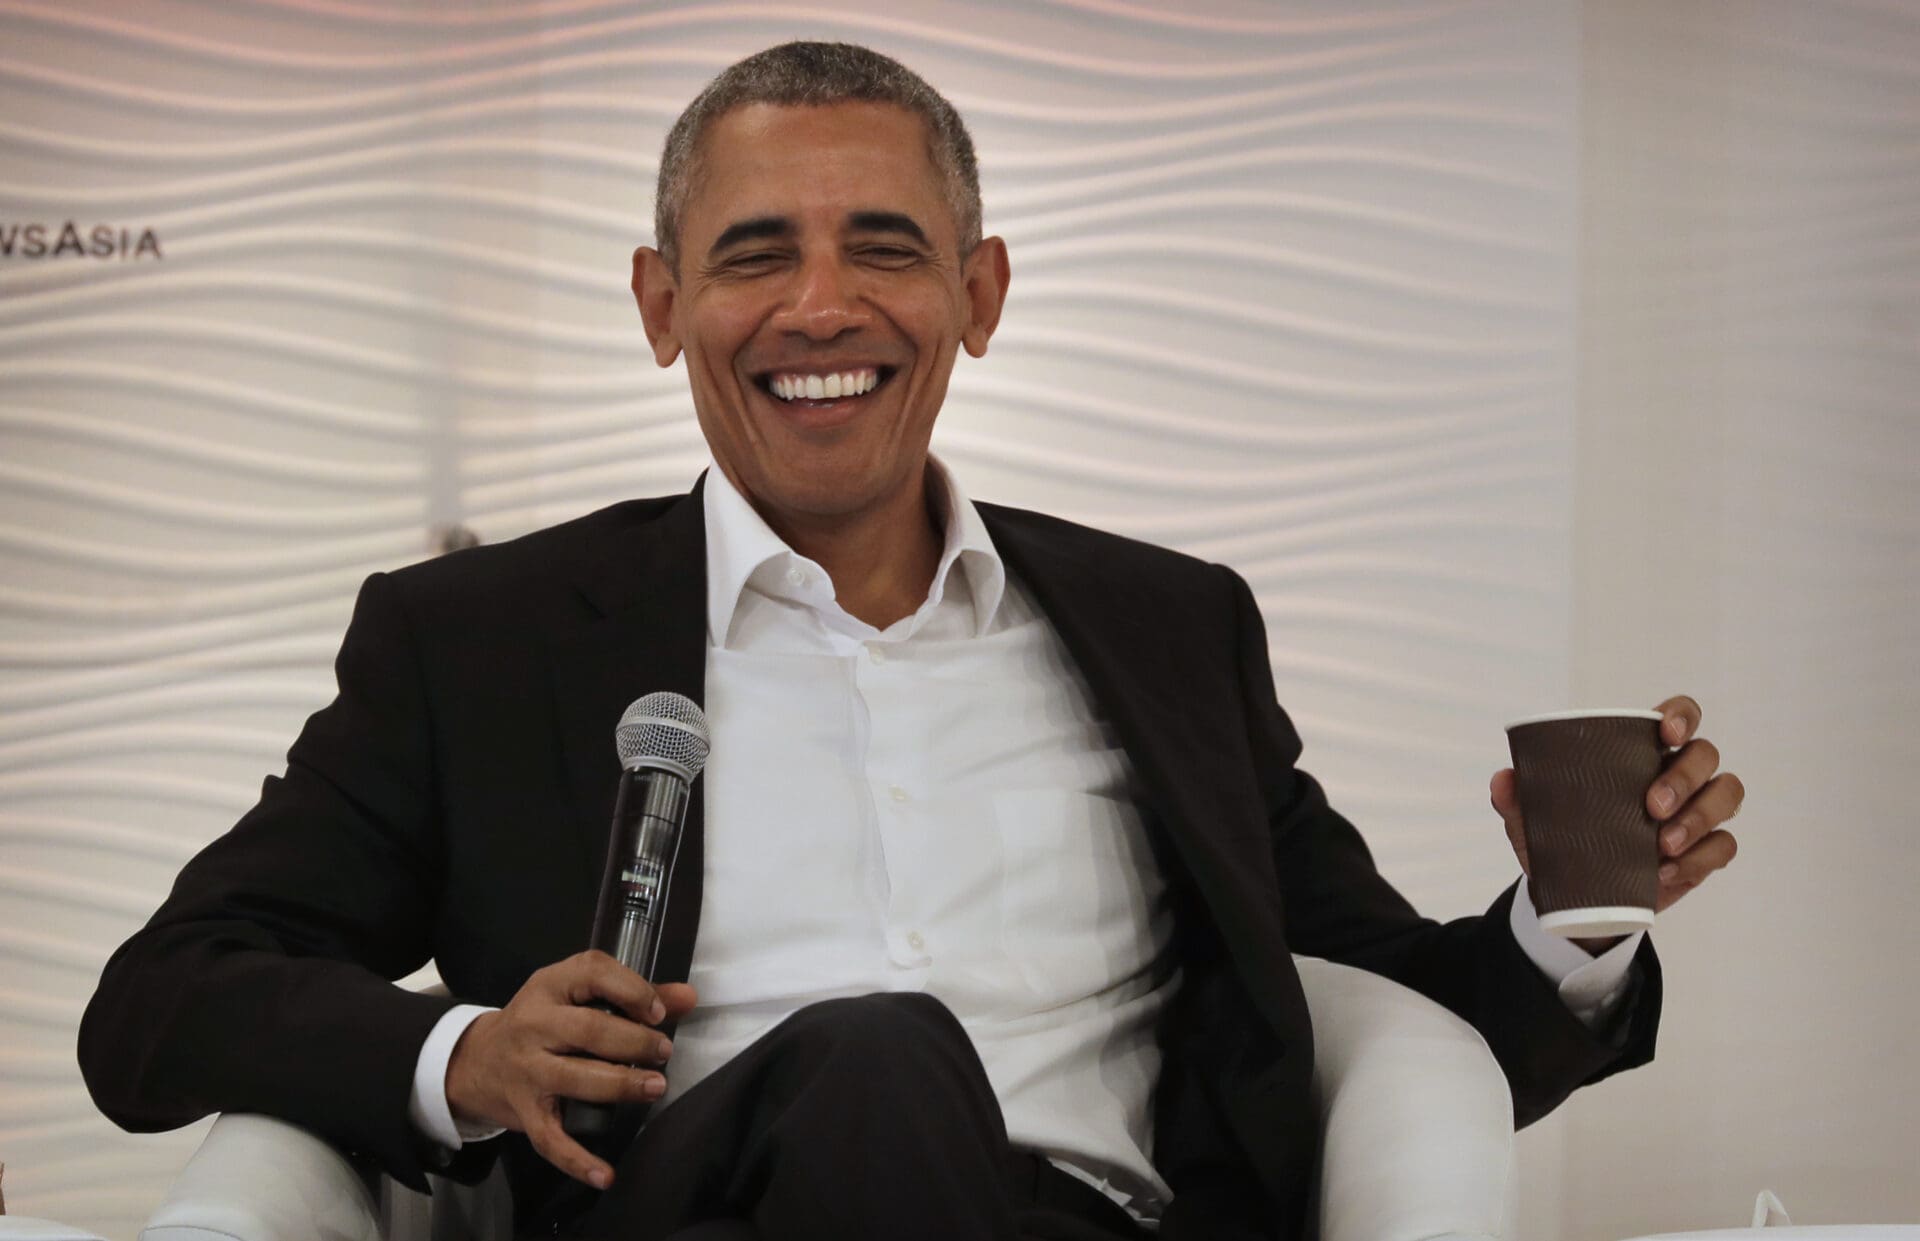 Barack Obama laughing